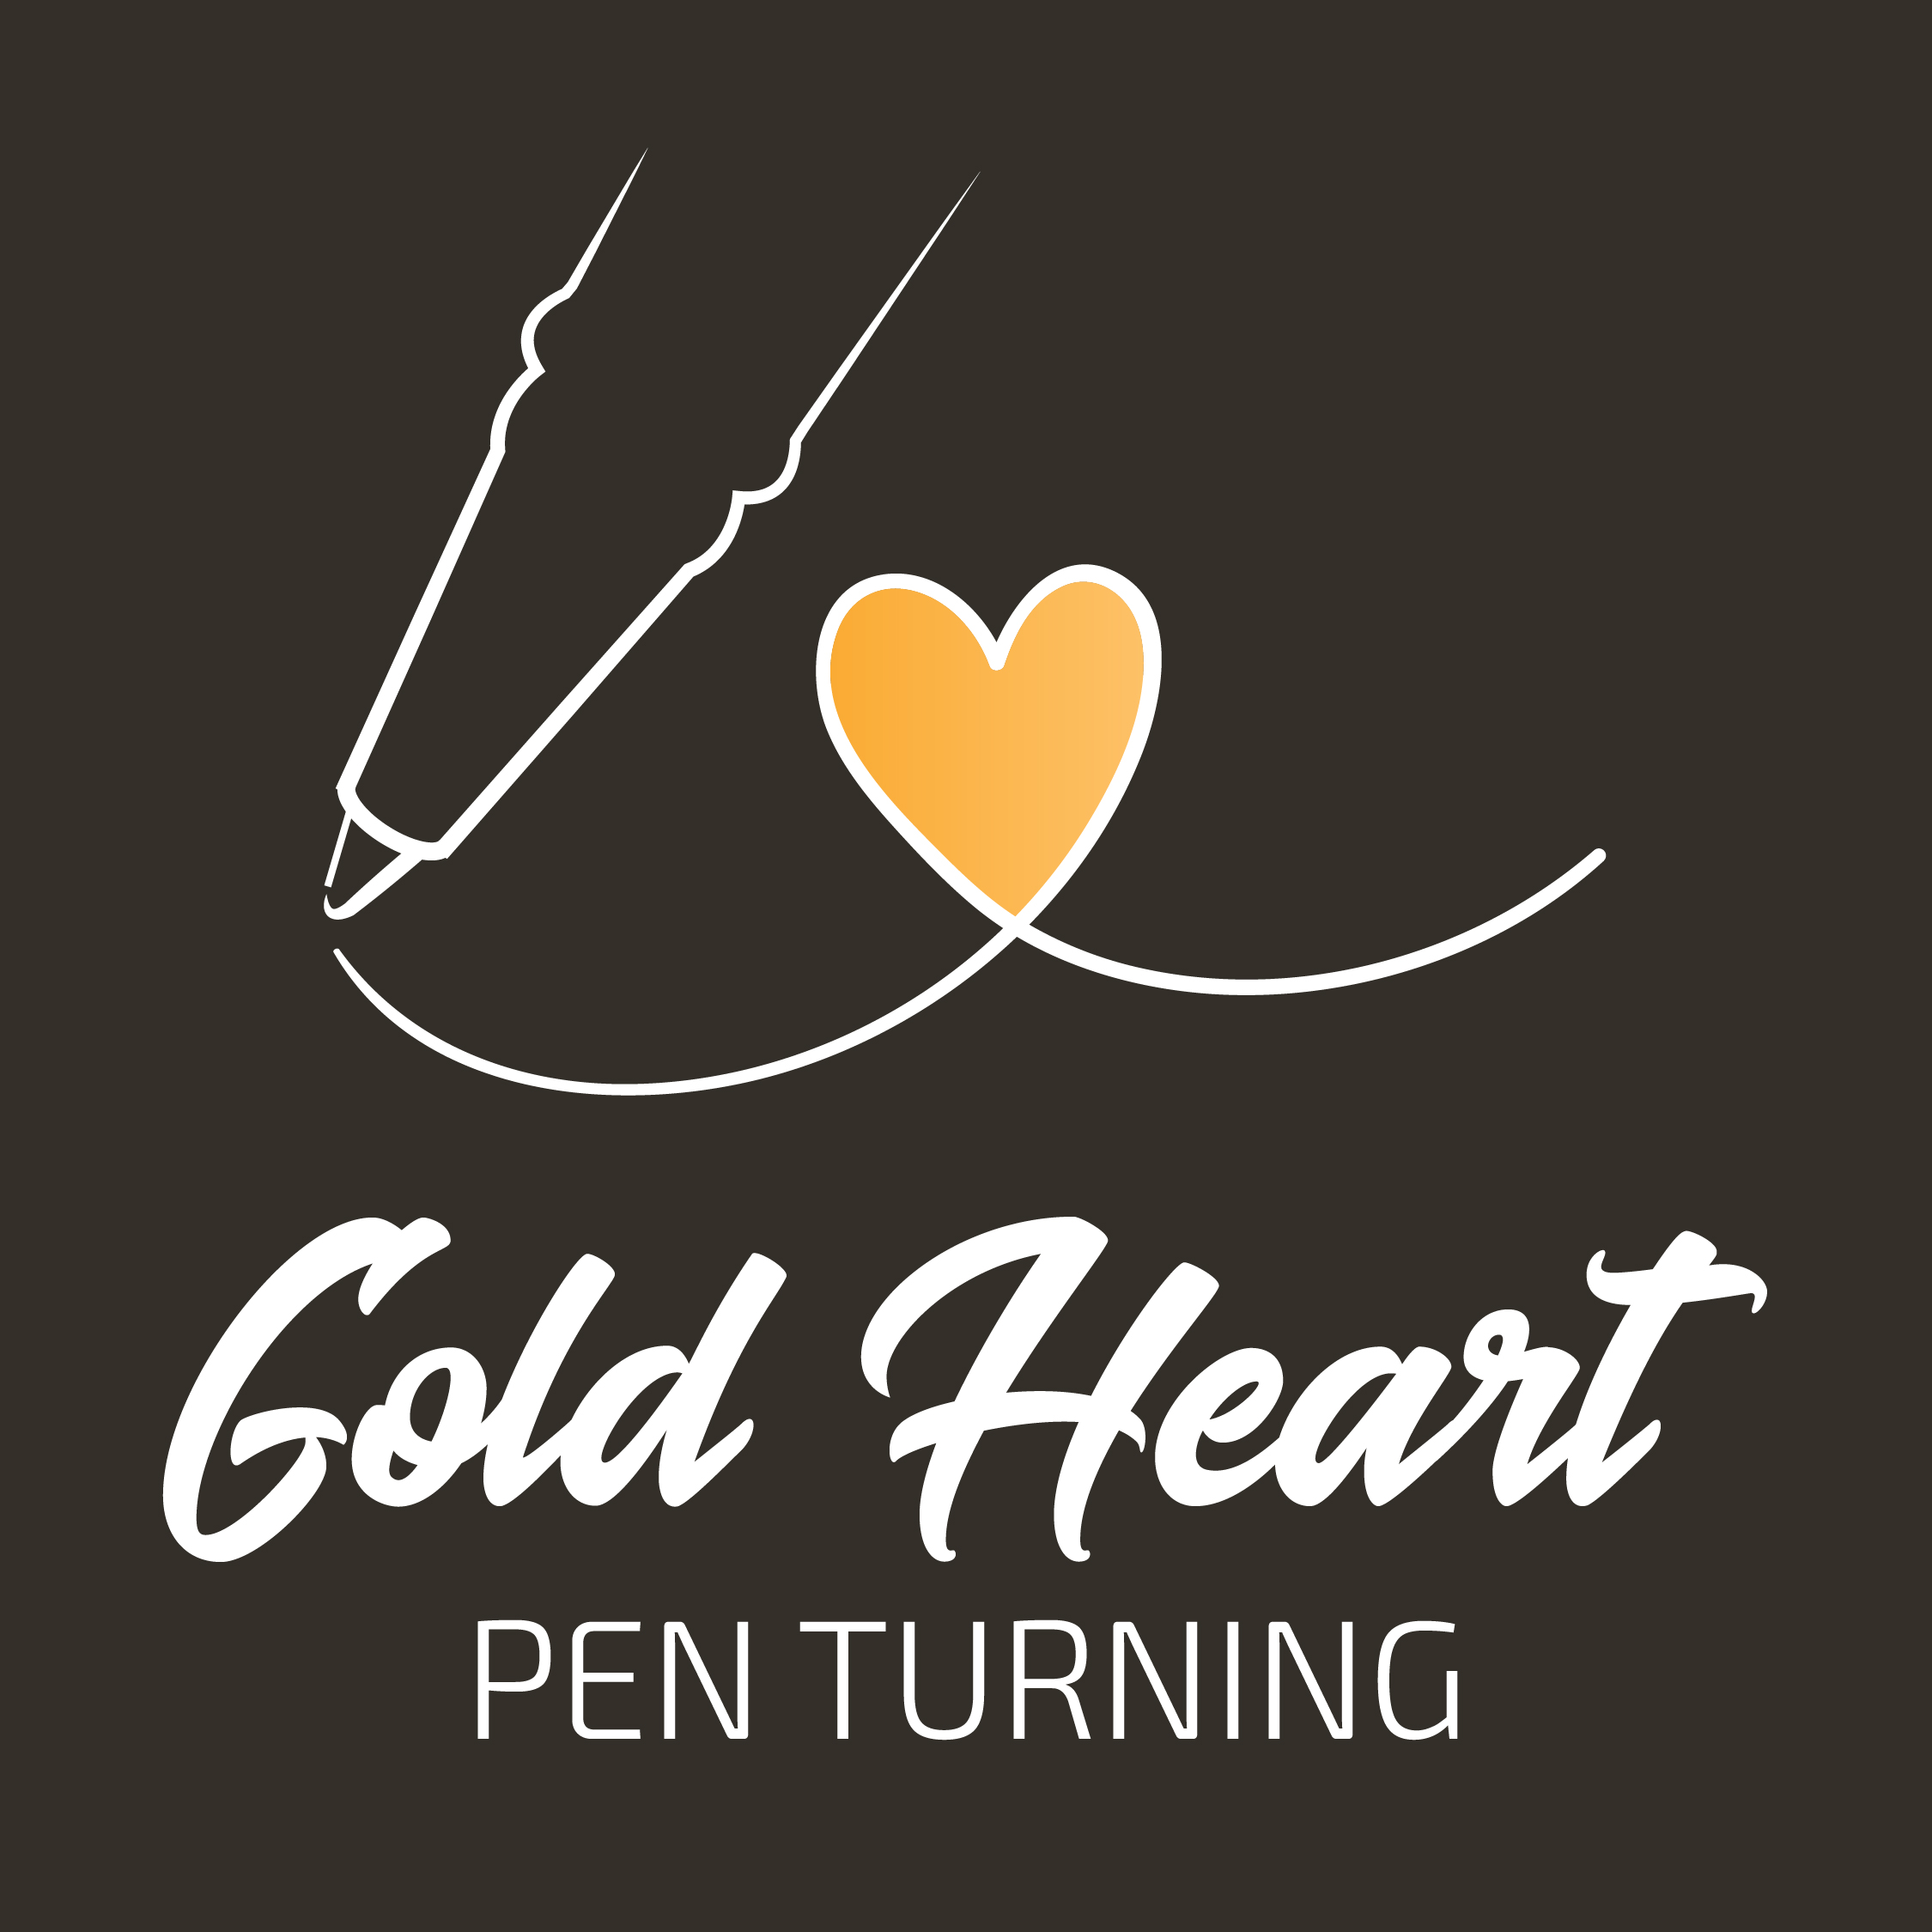 goldheart-penturning-finals-web-01